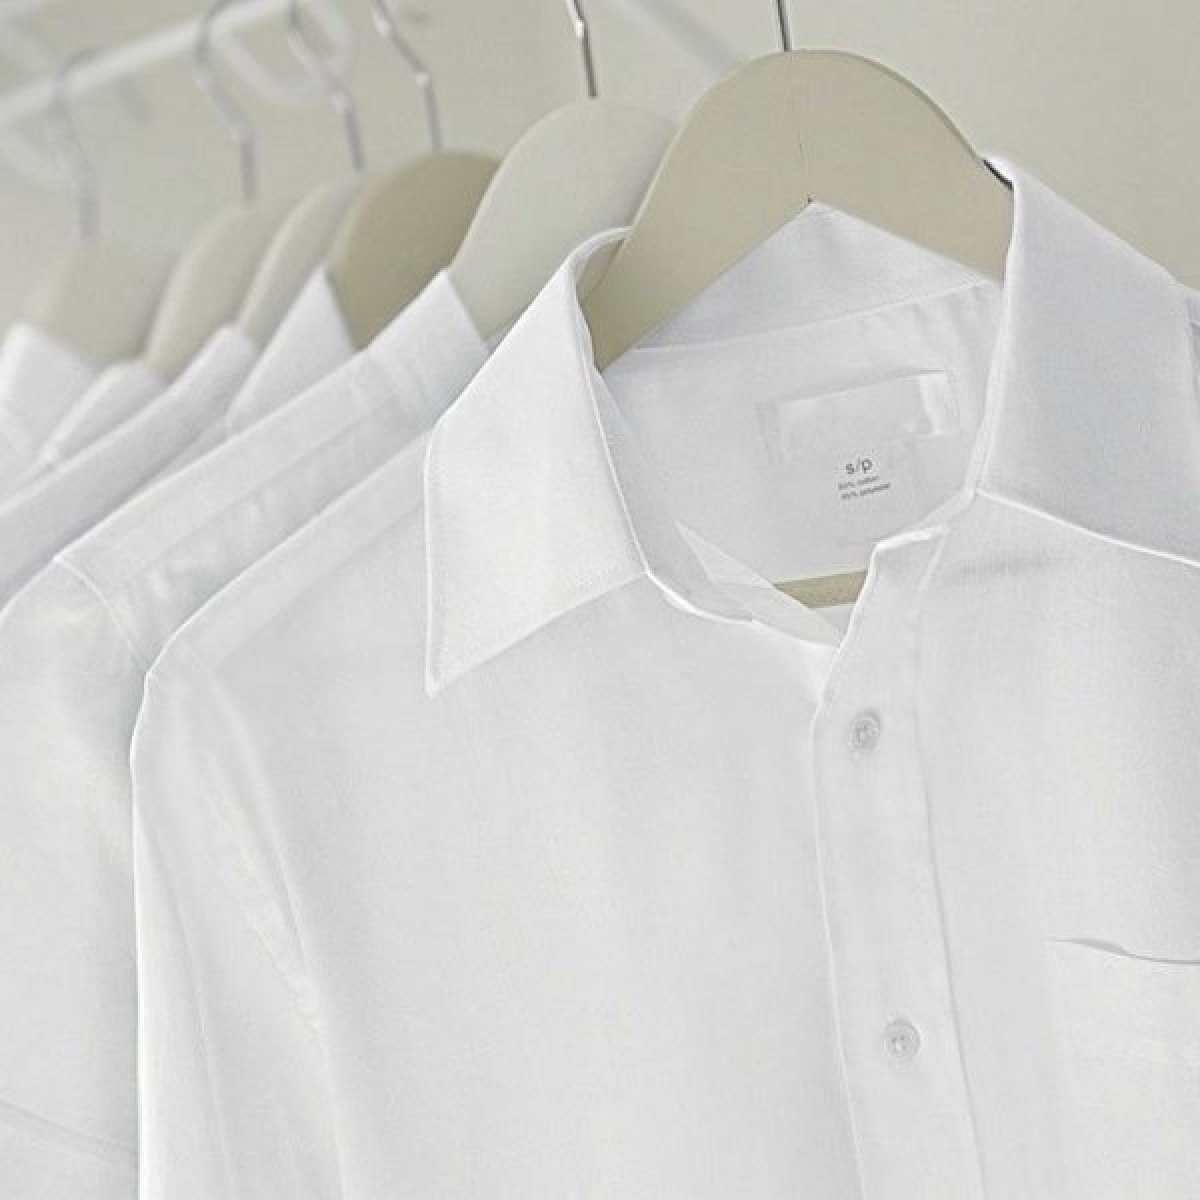 Pomáhá udržet vaše bílé prádlo zářivé